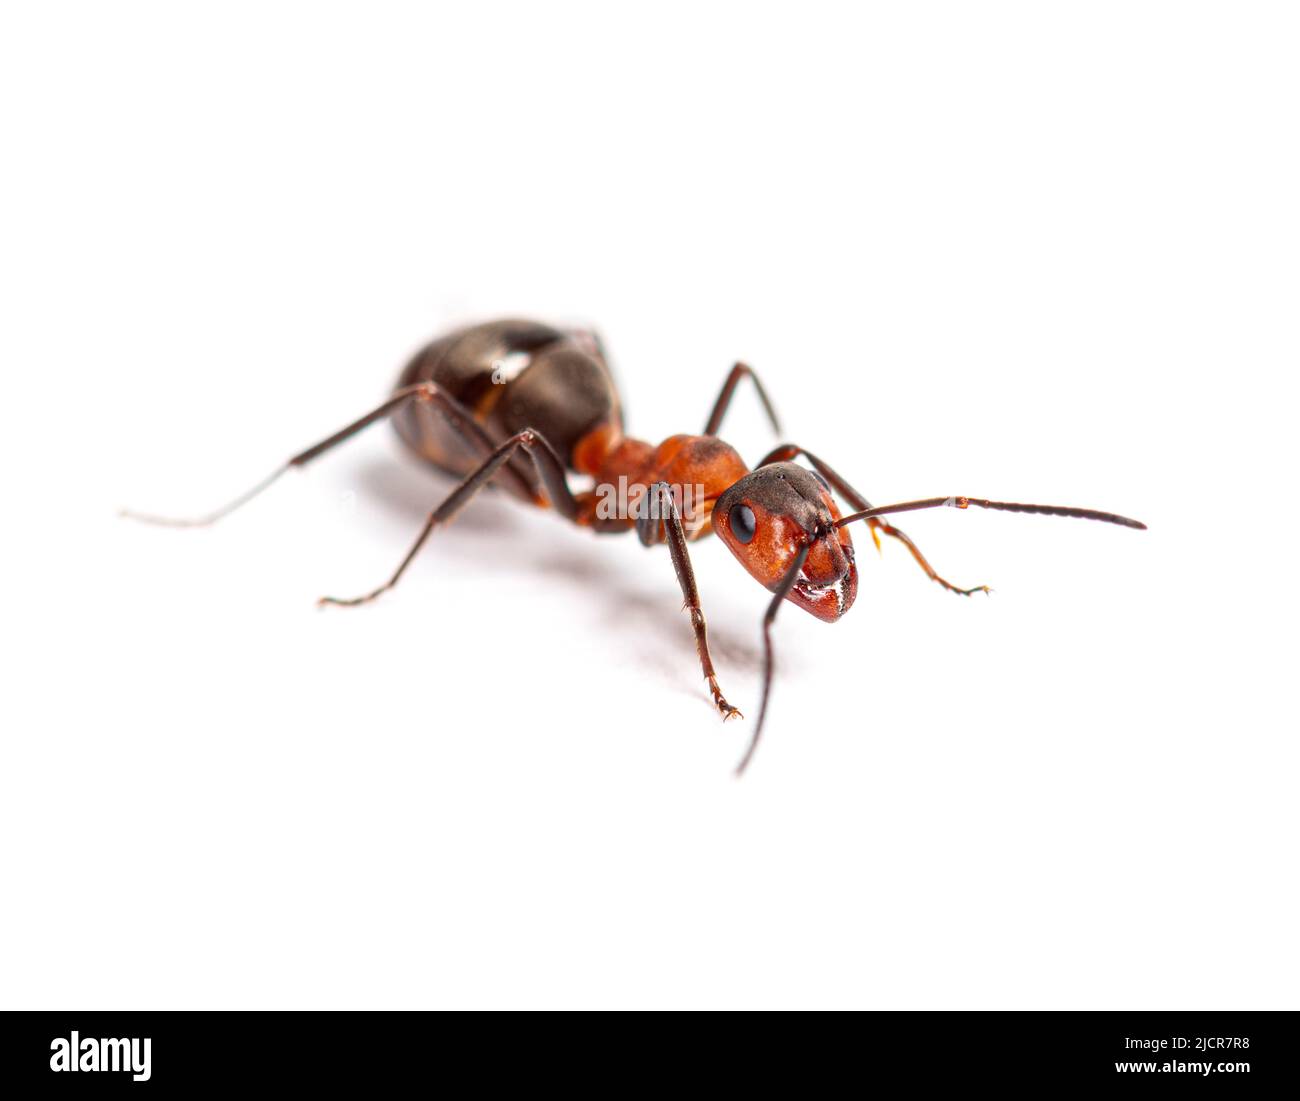 Hormiga de madera roja - Formica rufa o hormiga de madera del sur, aislada sobre blanco Foto de stock